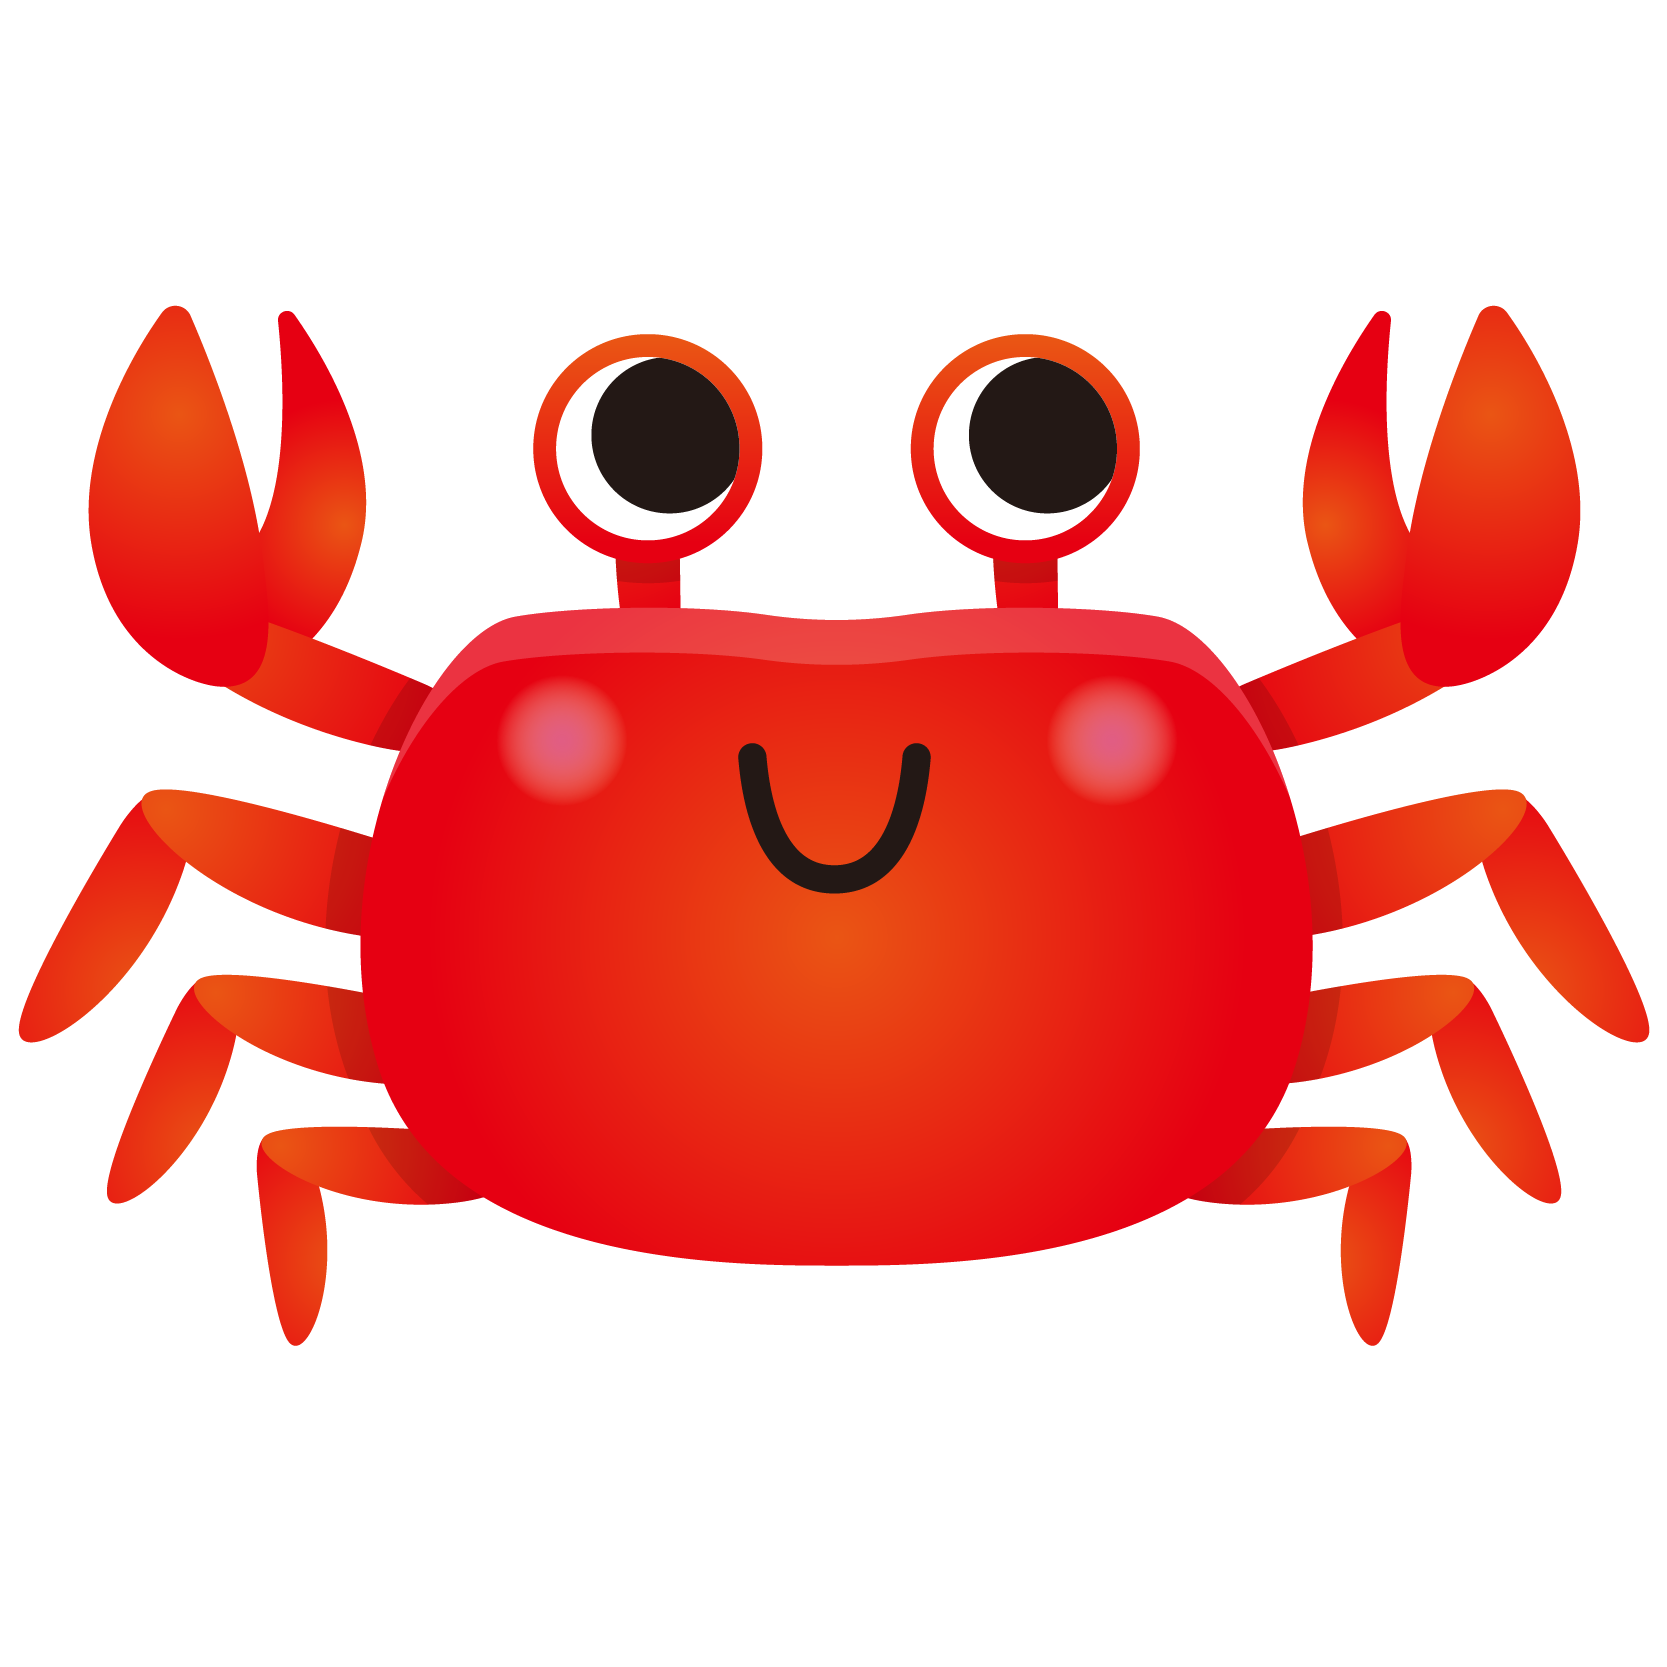 商用フリー 無料イラスト 赤いかに 蟹 のイラスト Crab001 商用ok フリー素材集 ナイスなイラスト